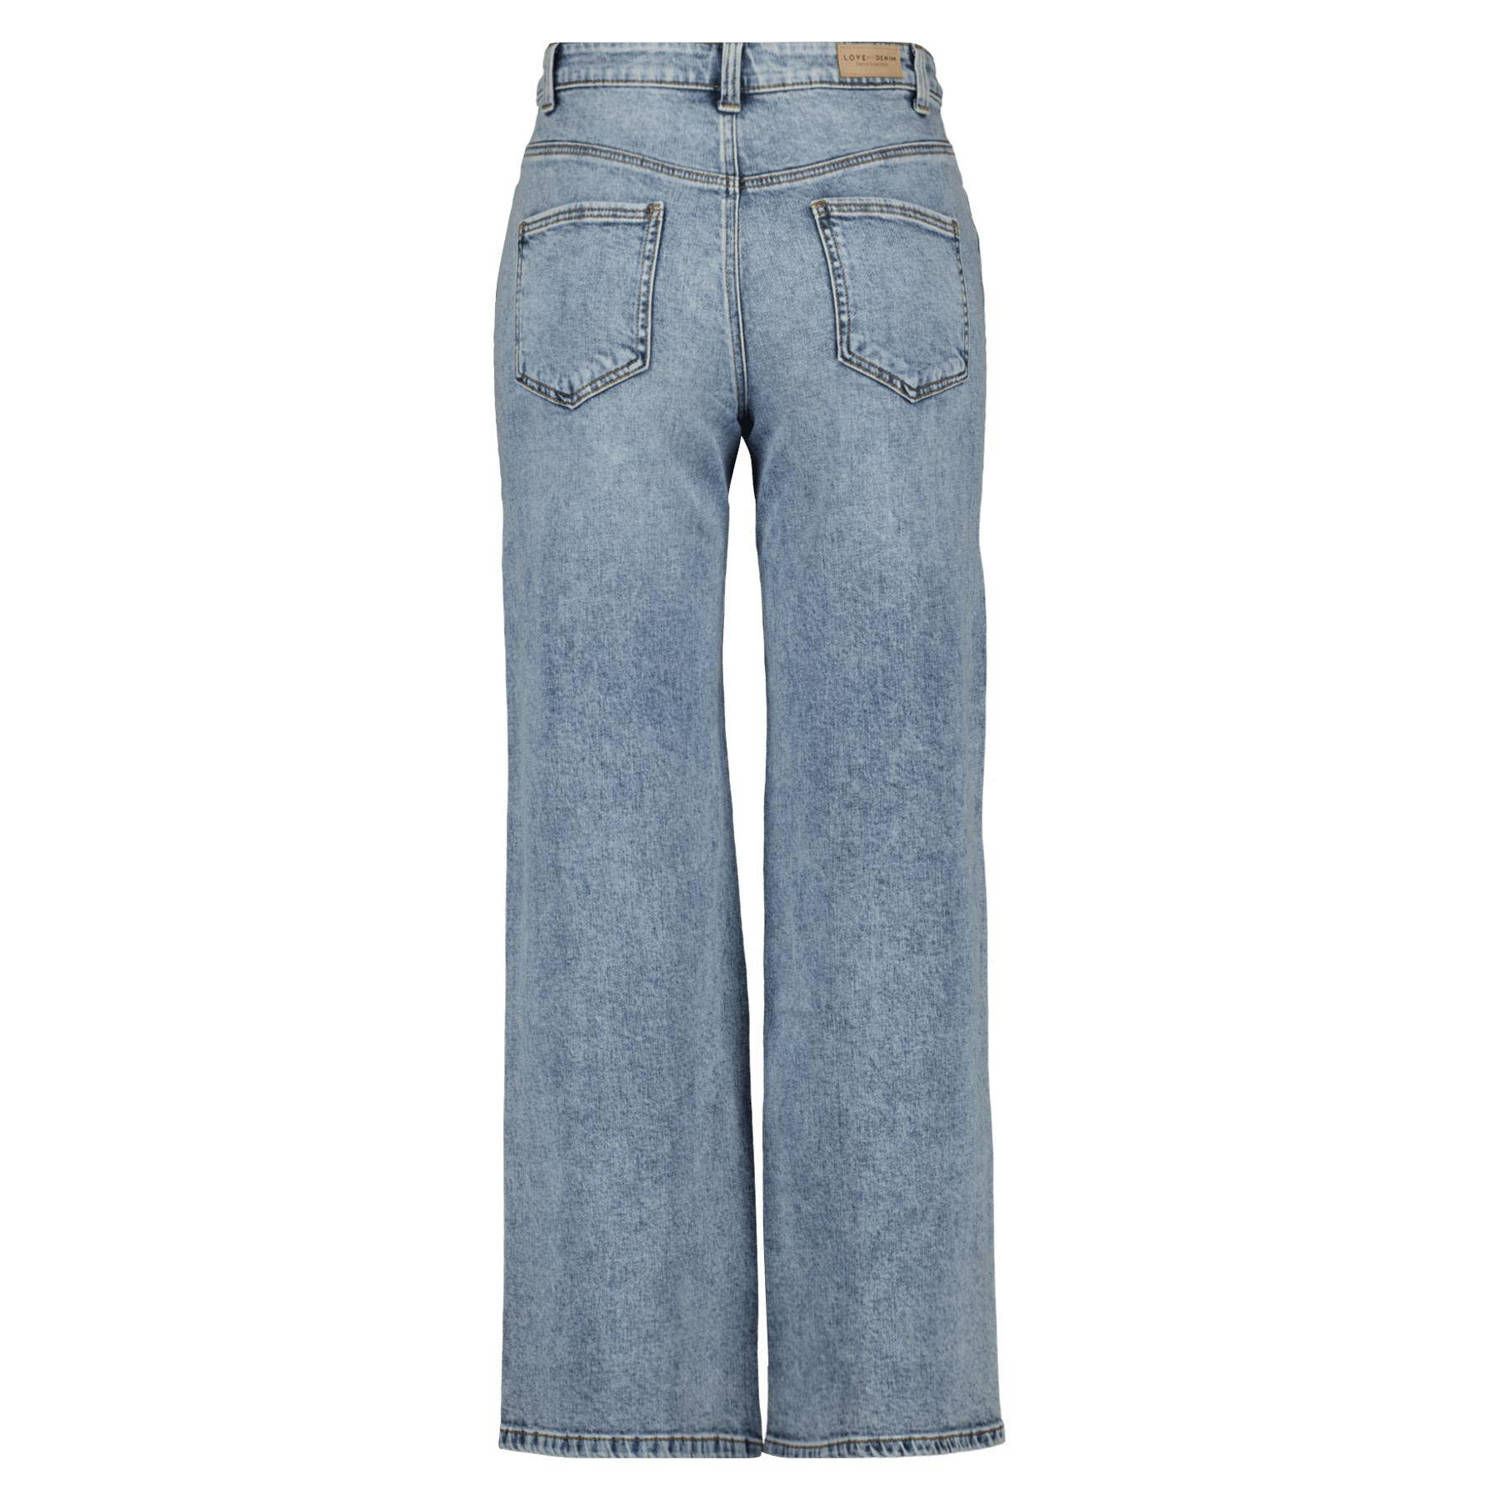 MS Mode high waist jeans light blue denim